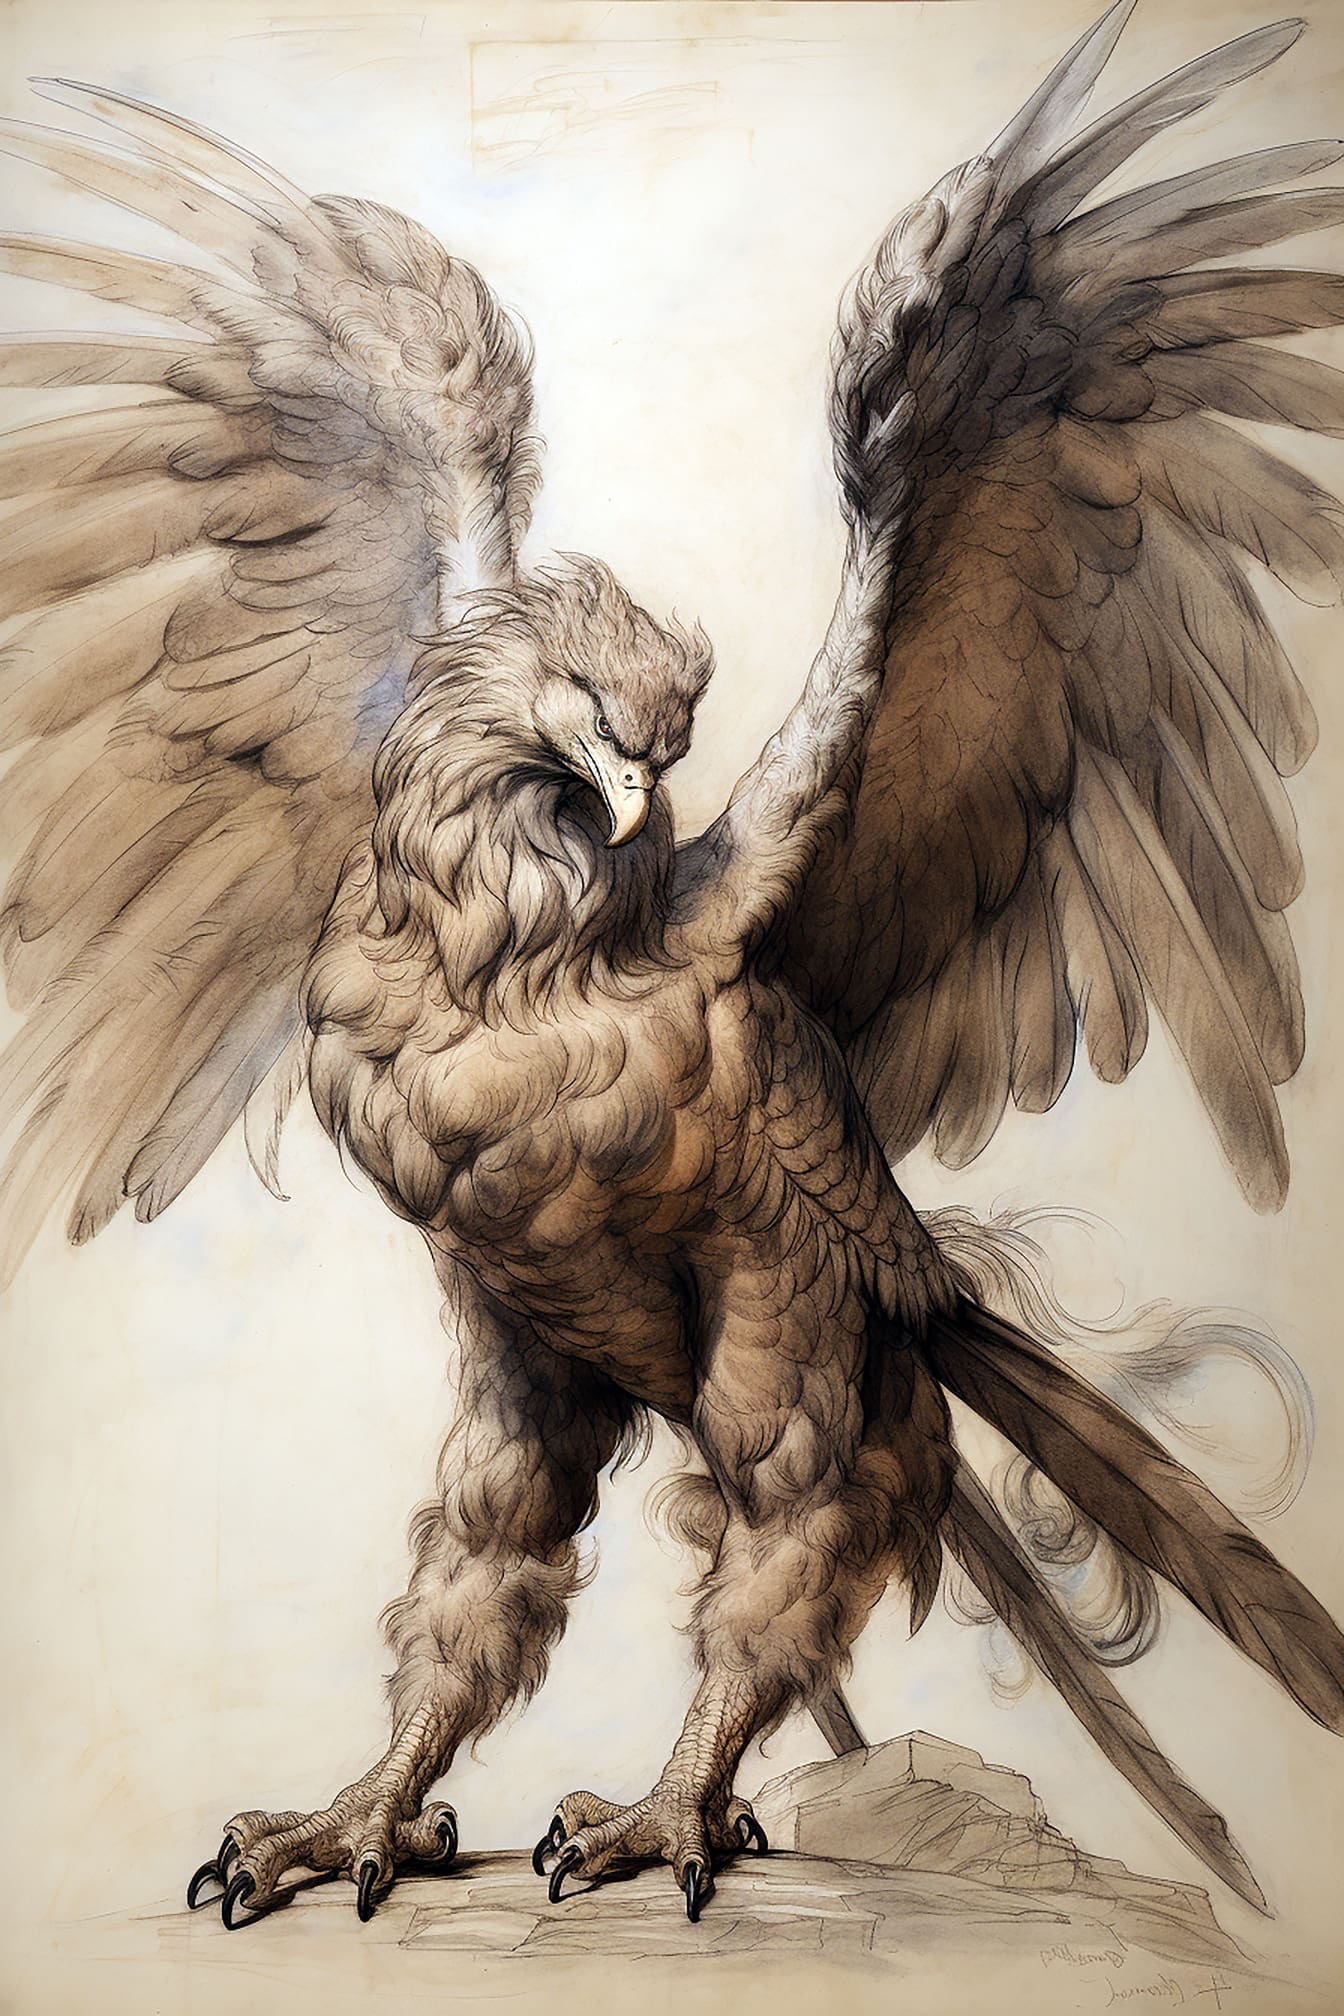 Piękna ilustracja artystyczna orła z wielkimi skrzydłami